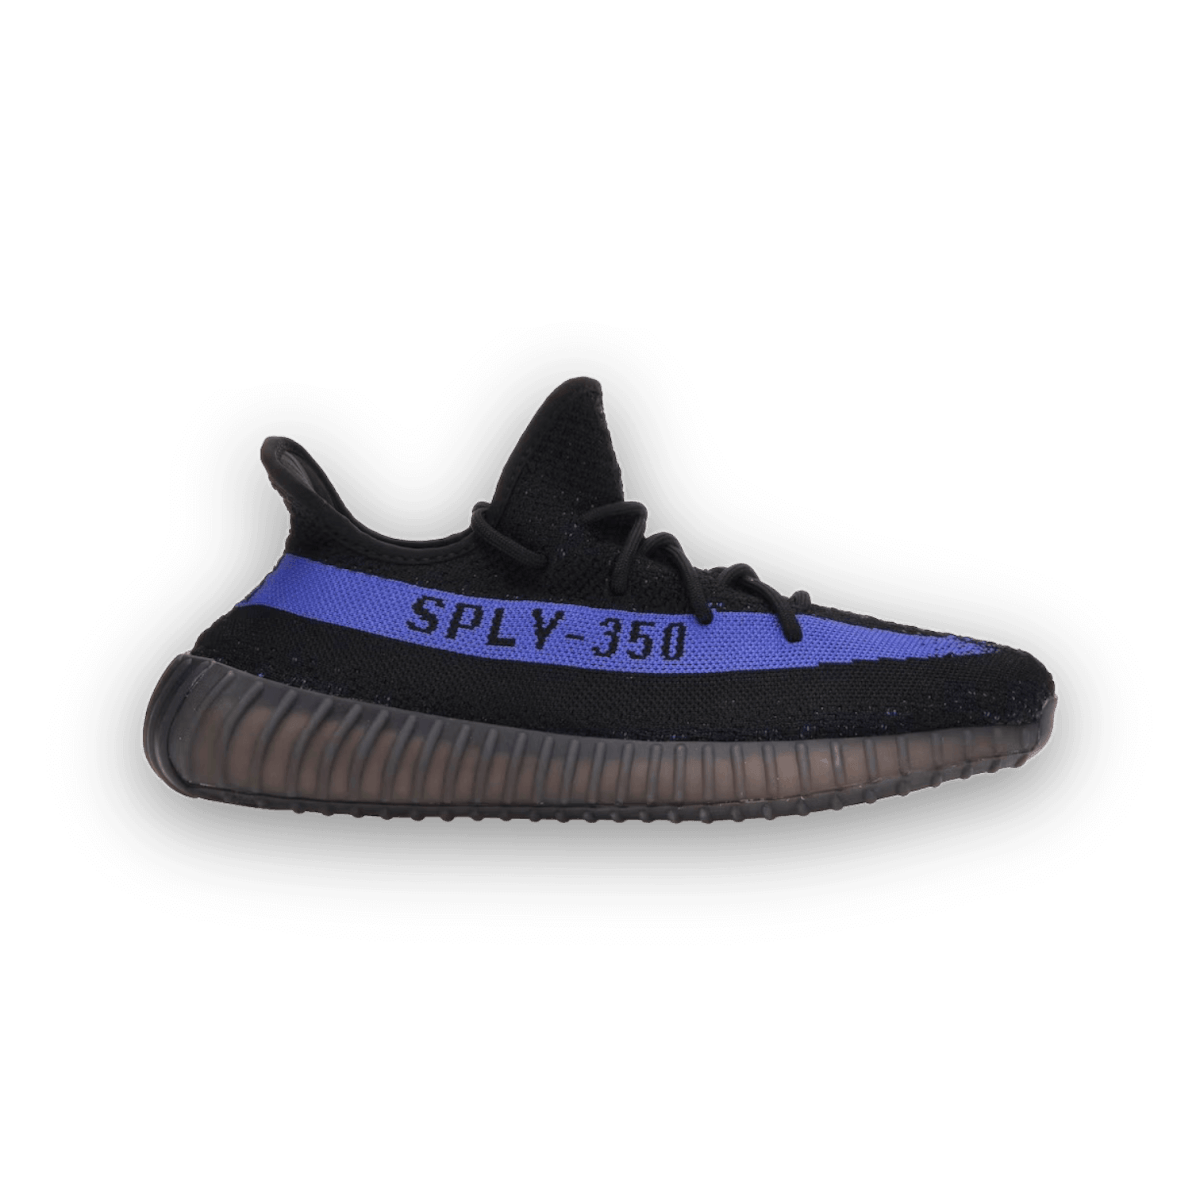 Yeezy Boost 350 V2 Dazzling Blue - Rep Box - Low Sneaker - Jawns on Fire Sneakers & Streetwear